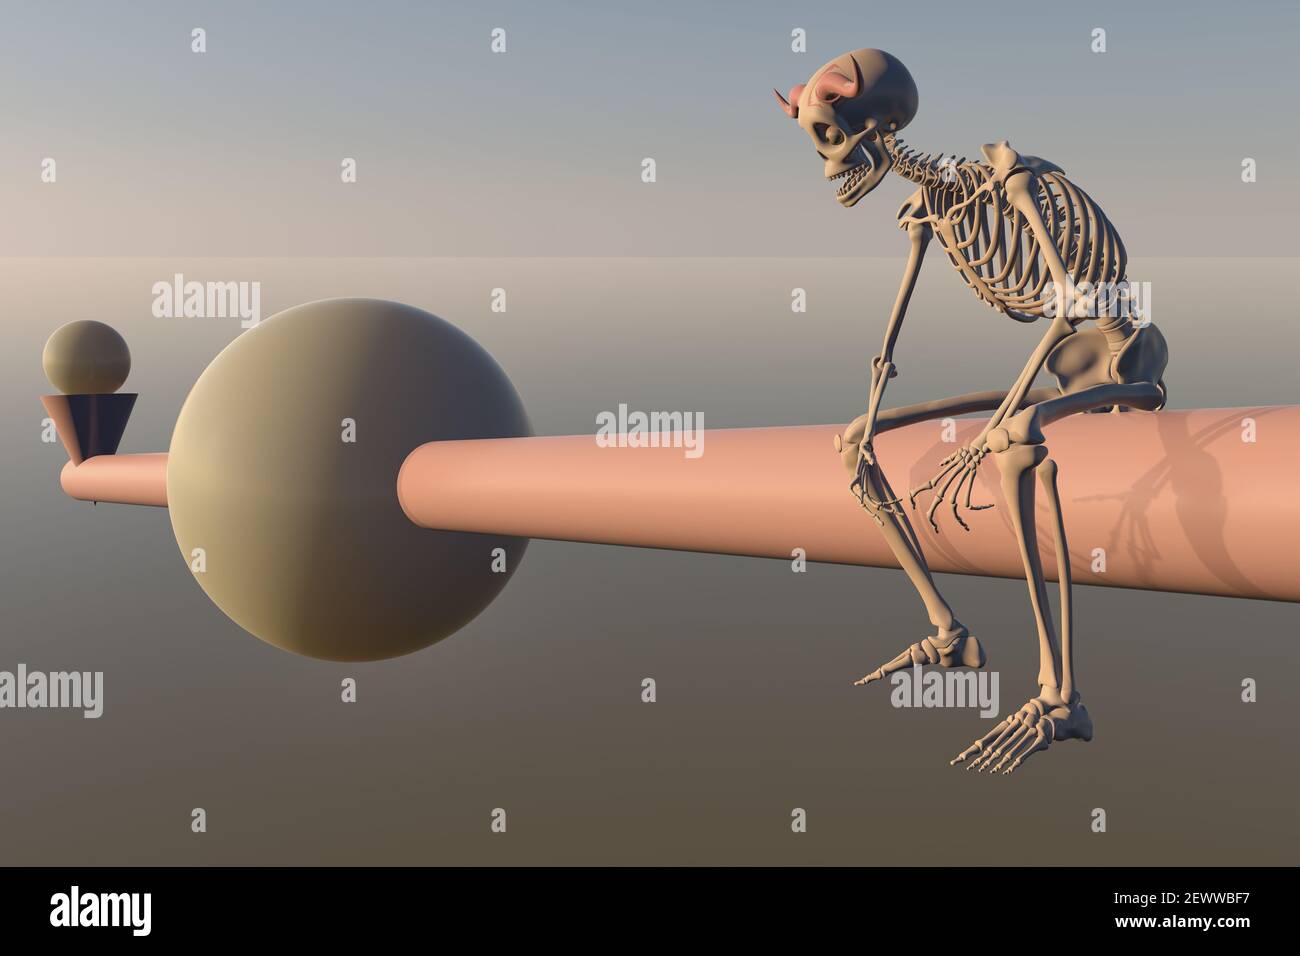 Illustration de rendu 3D d'un squelette de diable assis sur une barre surréaliste avec des formes géométriques conservant un équilibre - Halloween Banque D'Images